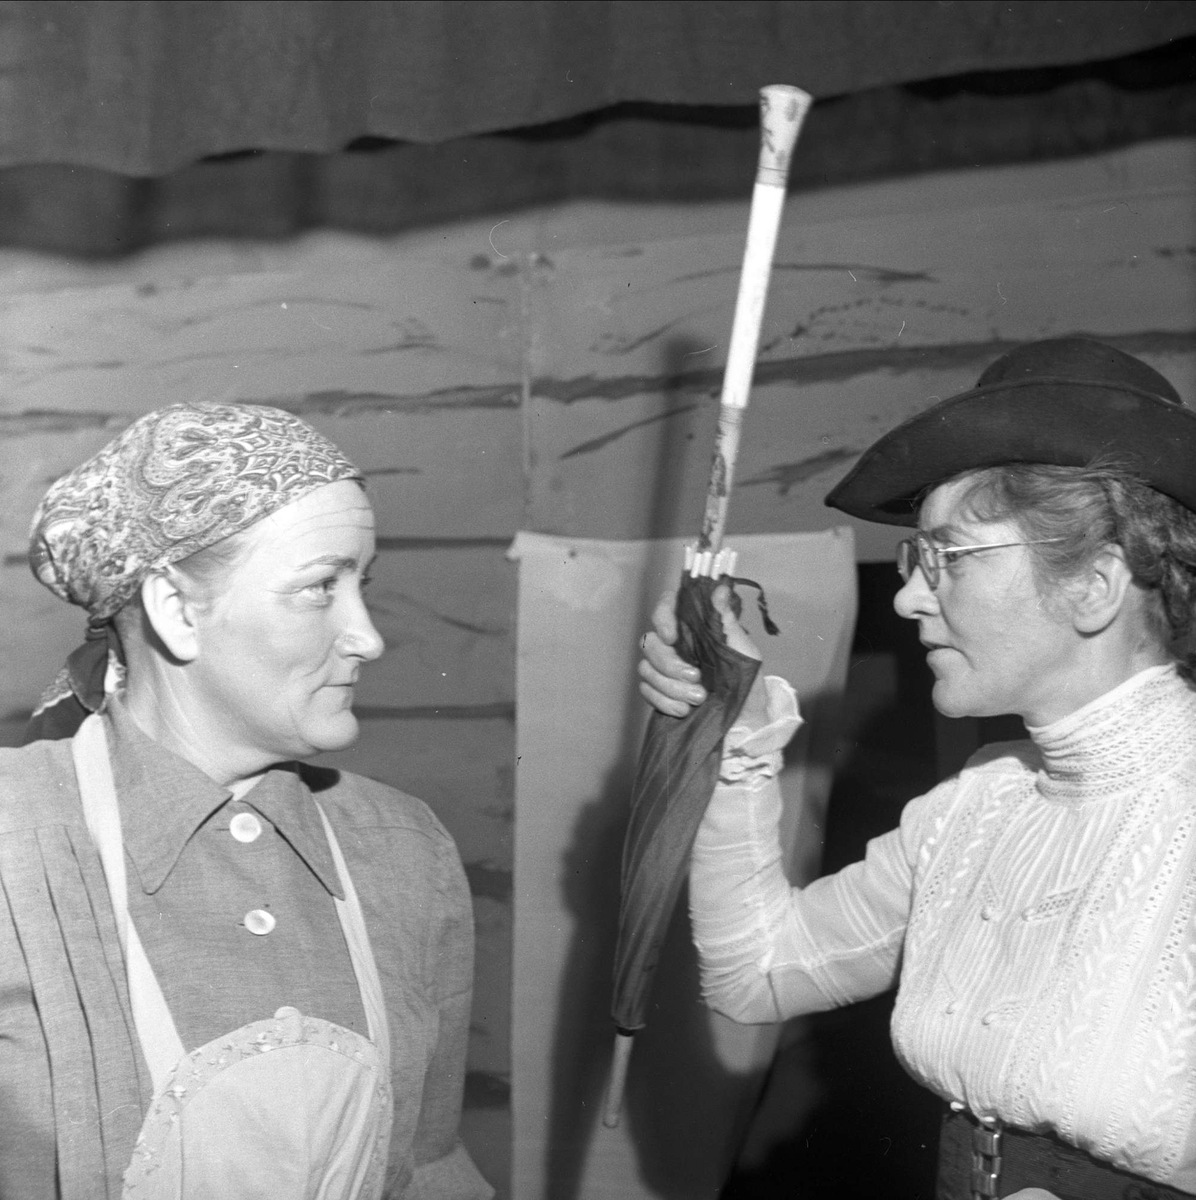 Mann og kvinne i kostymer. 22.03.1954. Bygdelag, Hallinglaget.